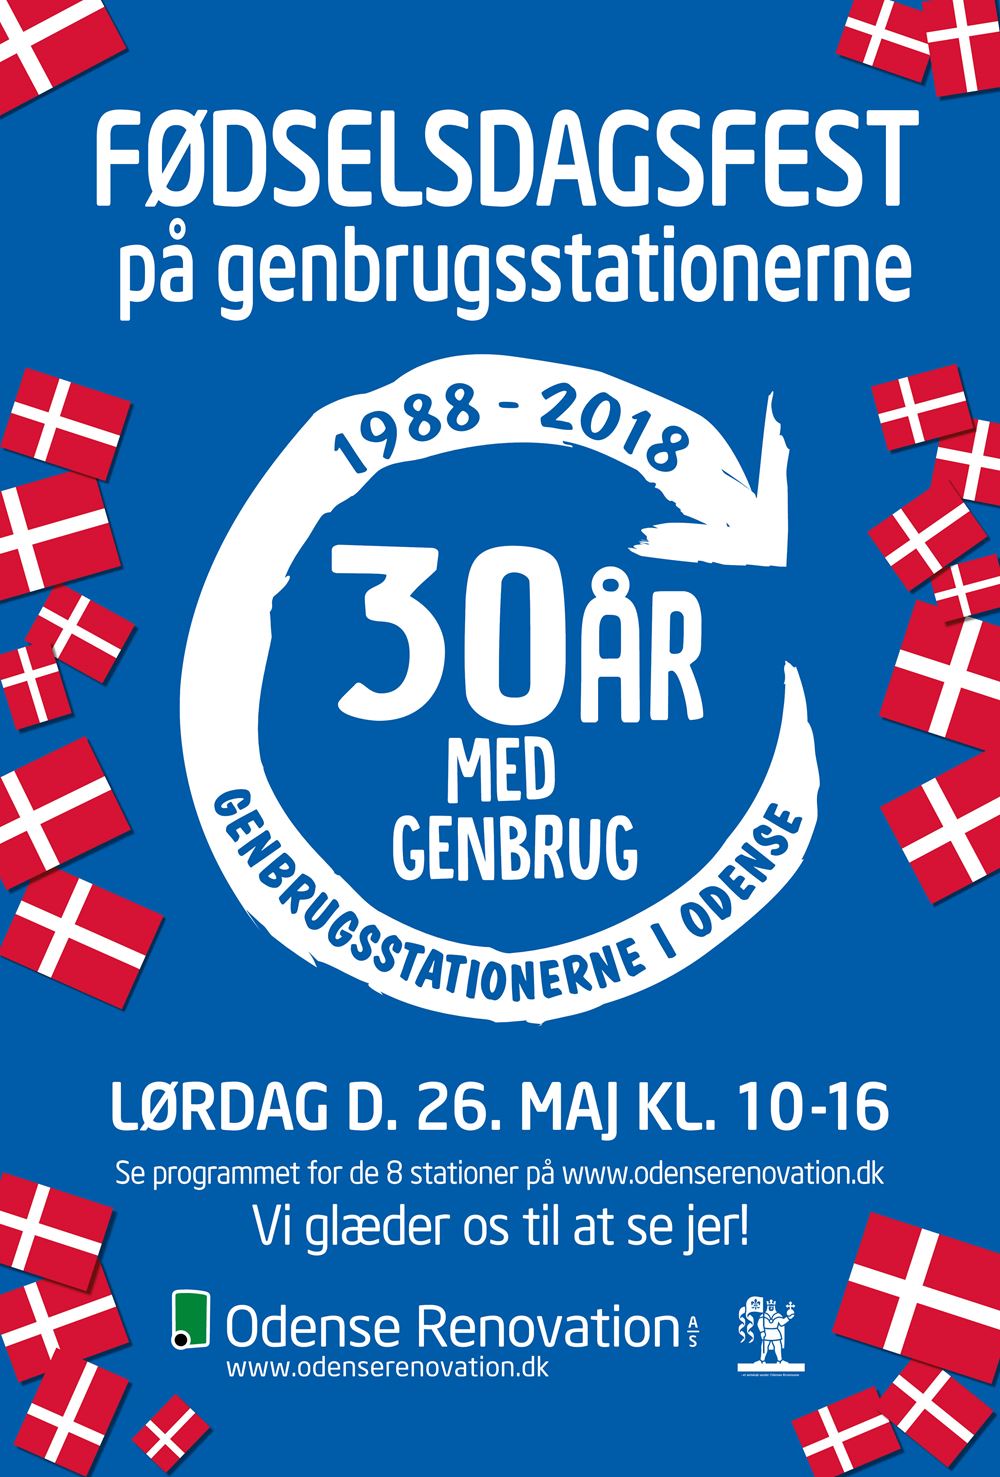 Hates Skeptisk Oversætte Kom med til 30 års fødselsdag på genbrugsstationerne - Odense Renovation